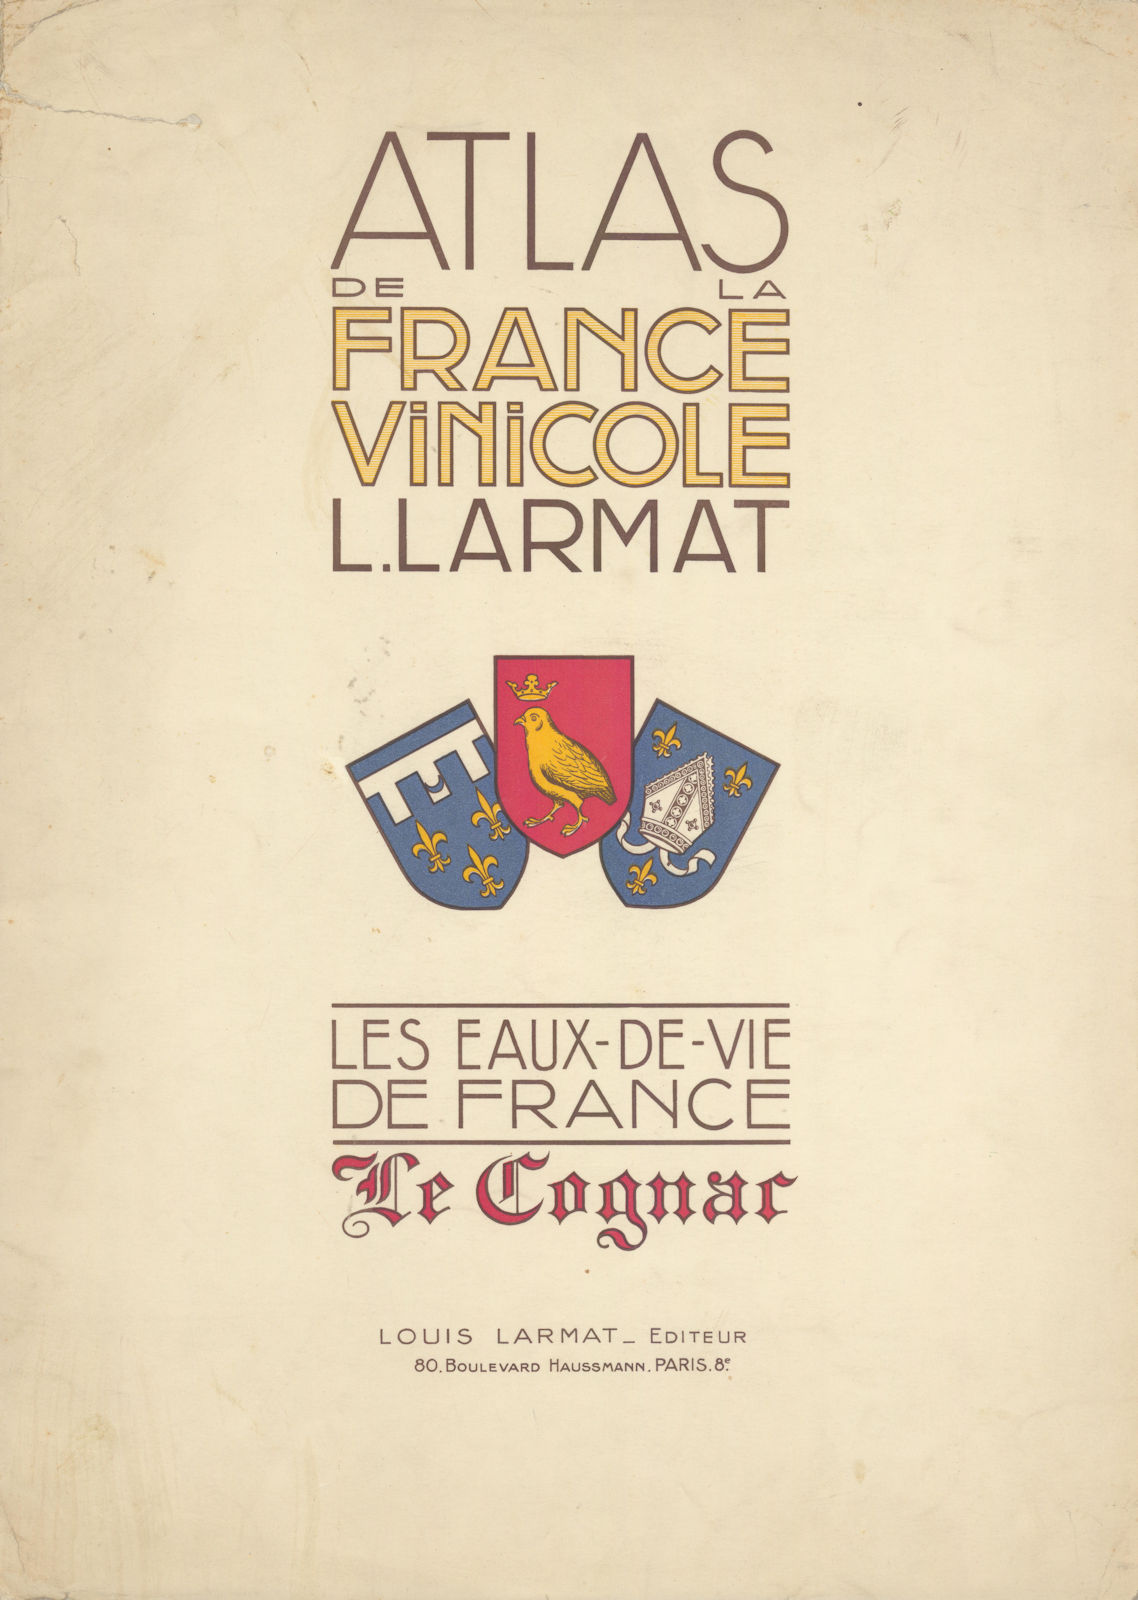 Louis Larmat. Atlas de La France Vinicole cover. Eaux-de-Vie - Cognac 1947